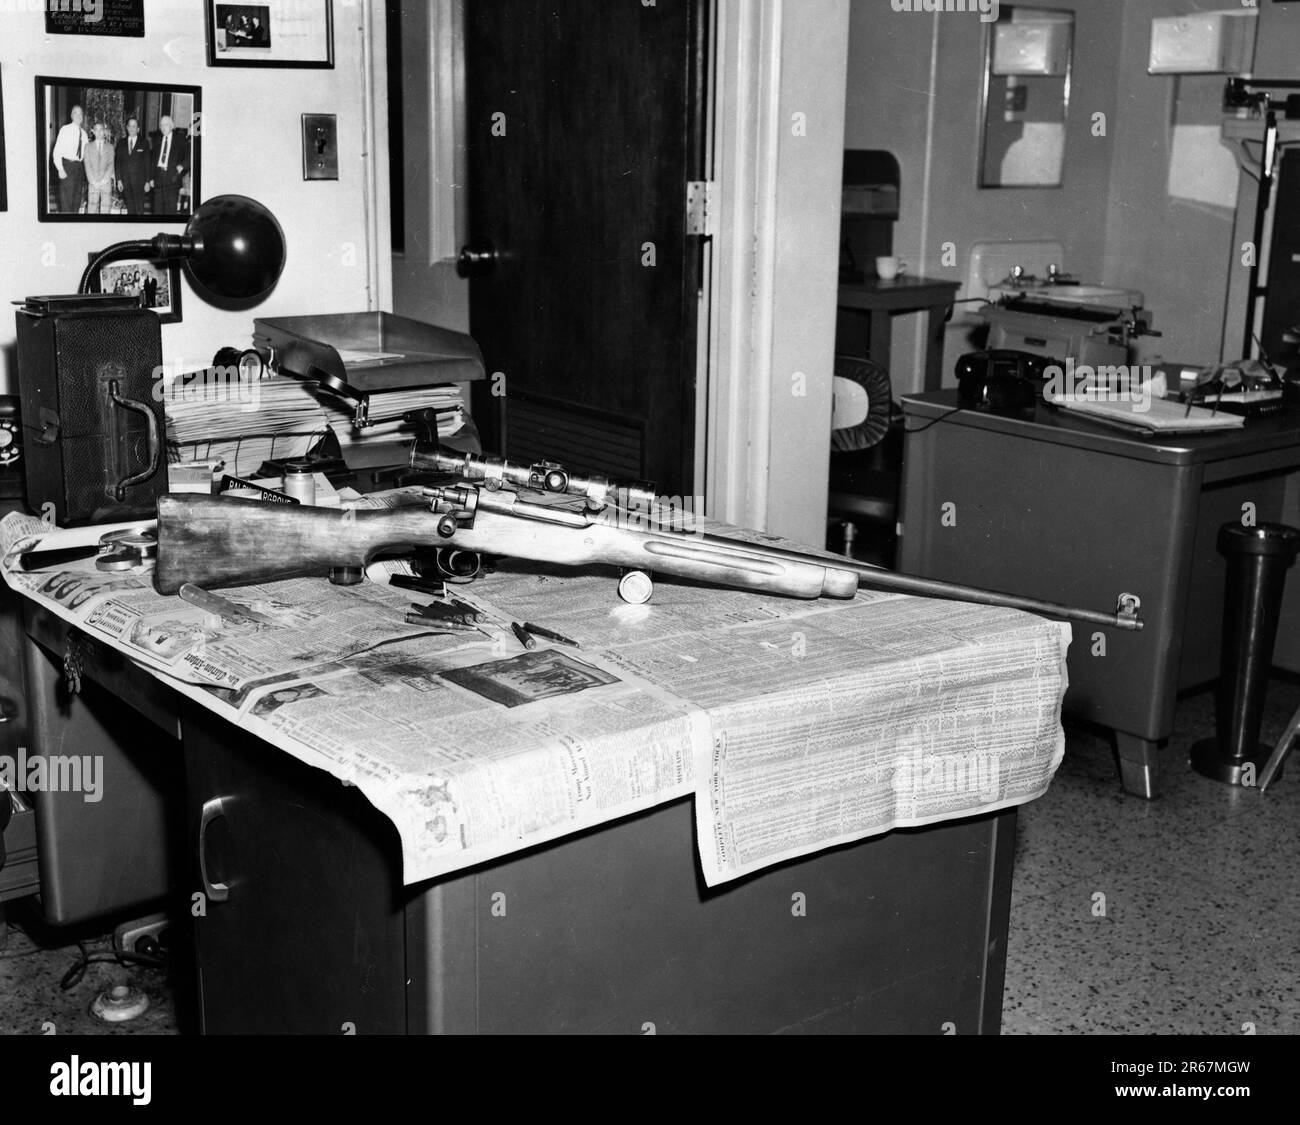 Das Gewehr, das De La Beckwith benutzt hat, um Evers zu ermorden. 1963. Gewehr, das Medgar Evers tötete. Fingerabdrücke auf teleskopischem Sichtfeld lokalisiert. Medgar wurde am Delta Drive, Jackson, Mississippi, erschossen. Stockfoto